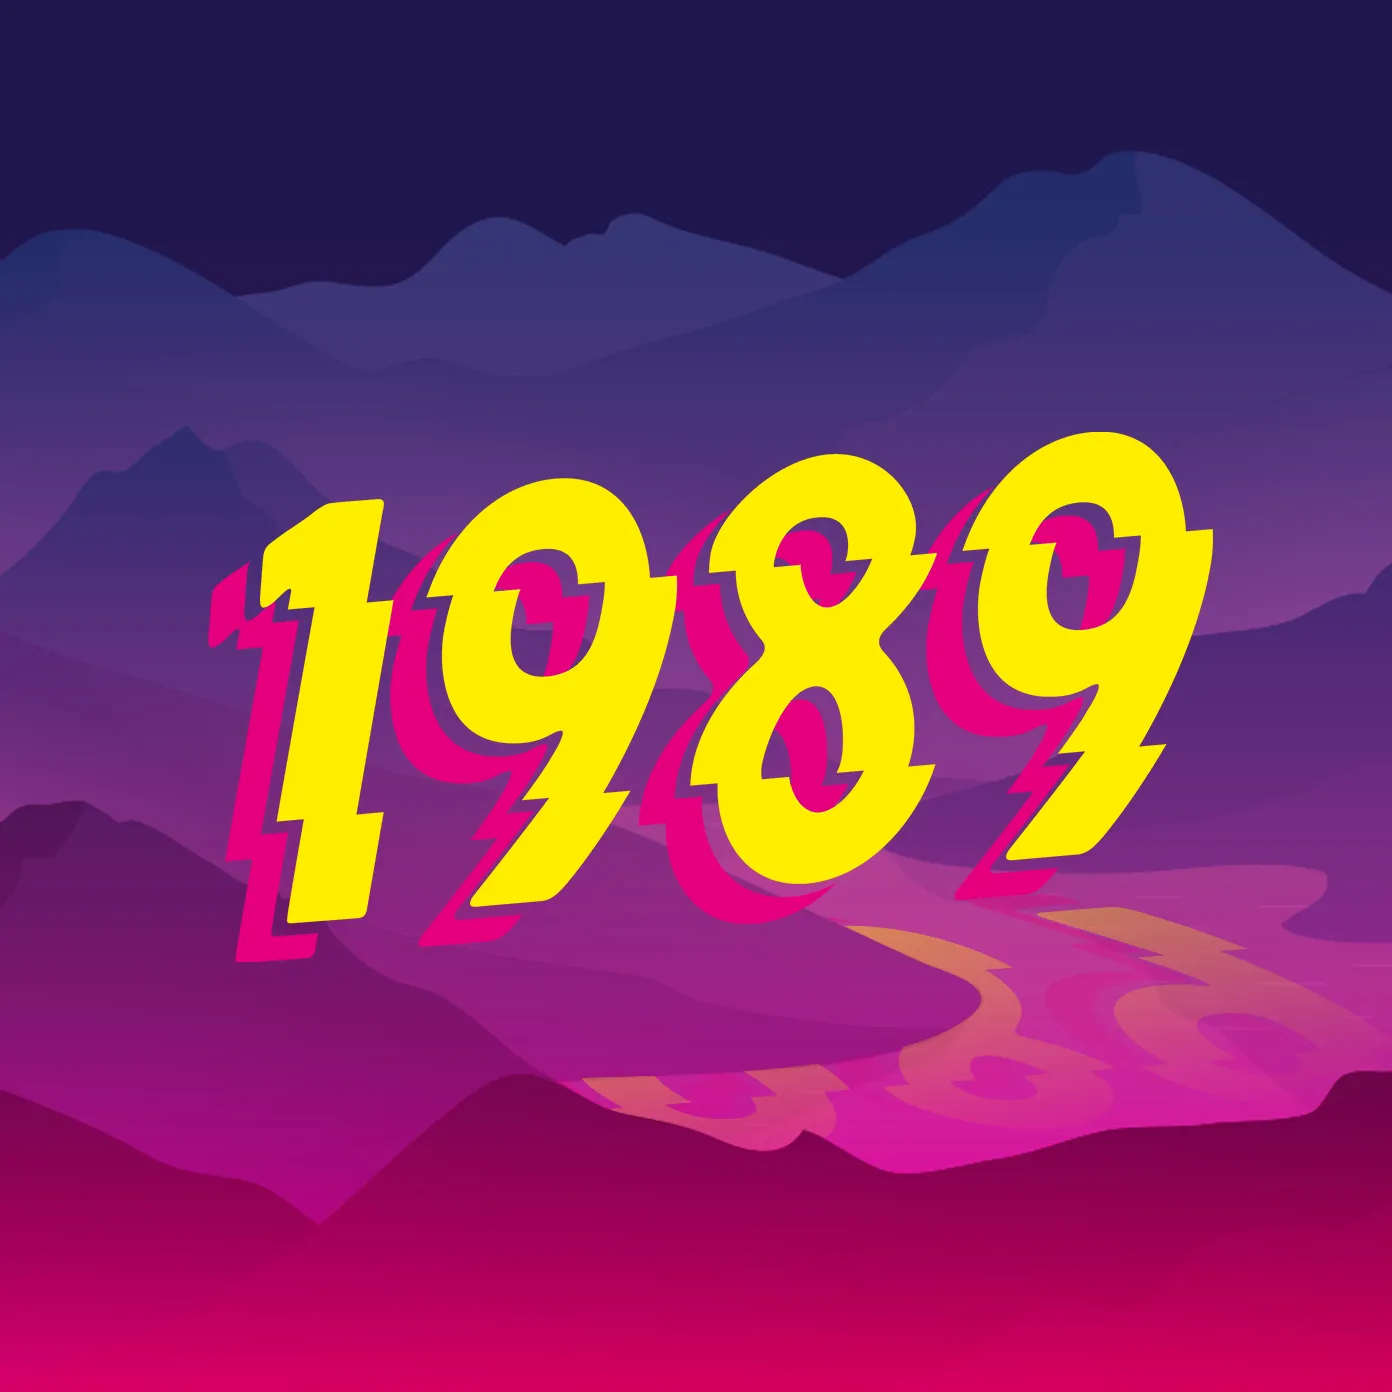 Voici le logo de la marque 1989 qui représente son identité graphique.